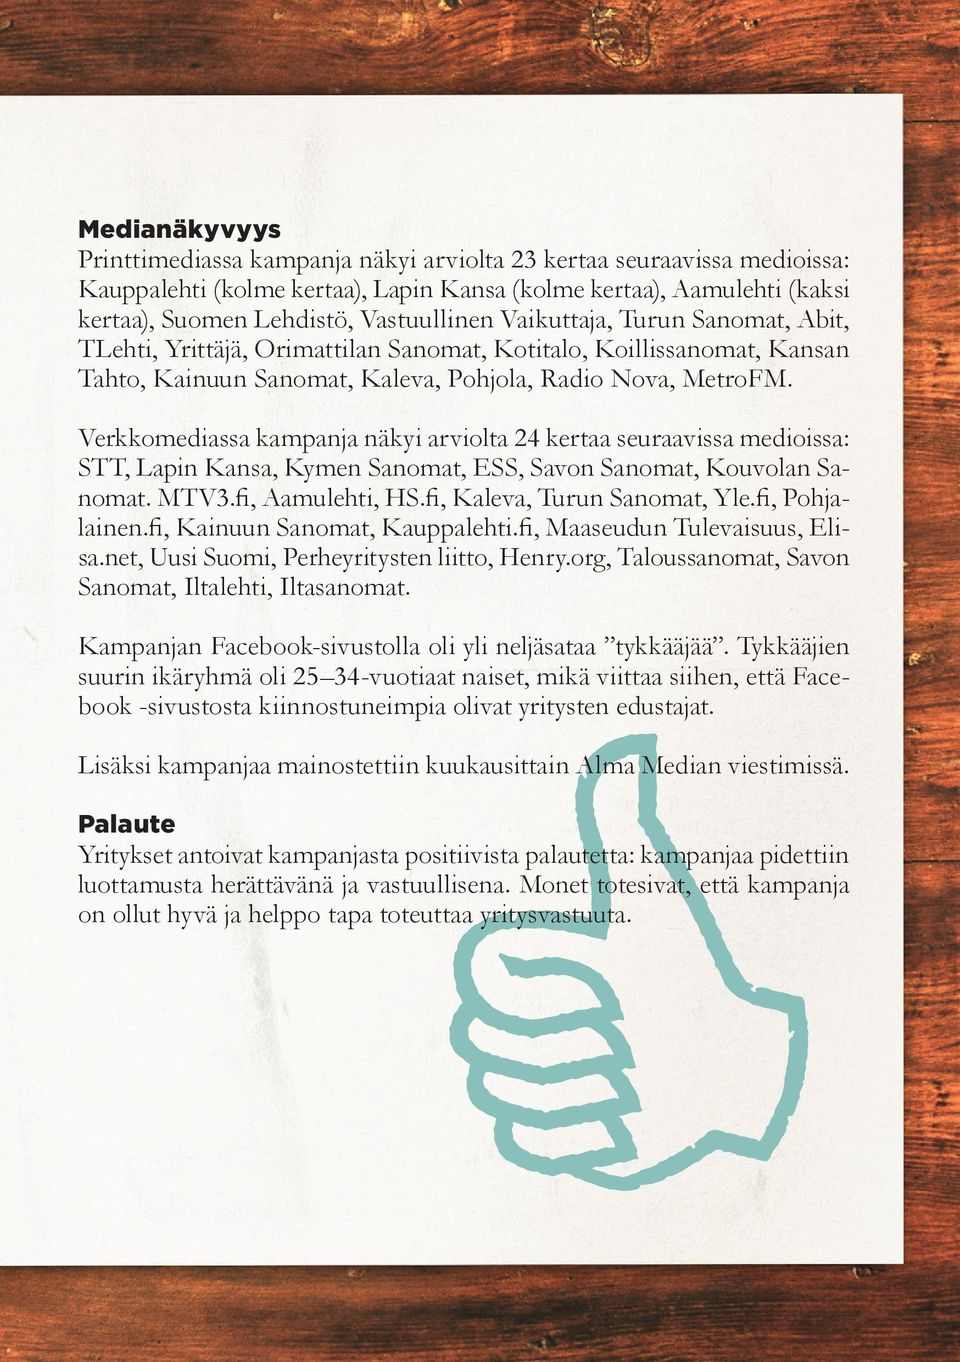 Verkkomediassa kampanja näkyi arviolta 24 kertaa seuraavissa medioissa: STT, Lapin Kansa, Kymen Sanomat, ESS, Savon Sanomat, Kouvolan Sanomat. MTV3.fi, Aamulehti, HS.fi, Kaleva, Turun Sanomat, Yle.